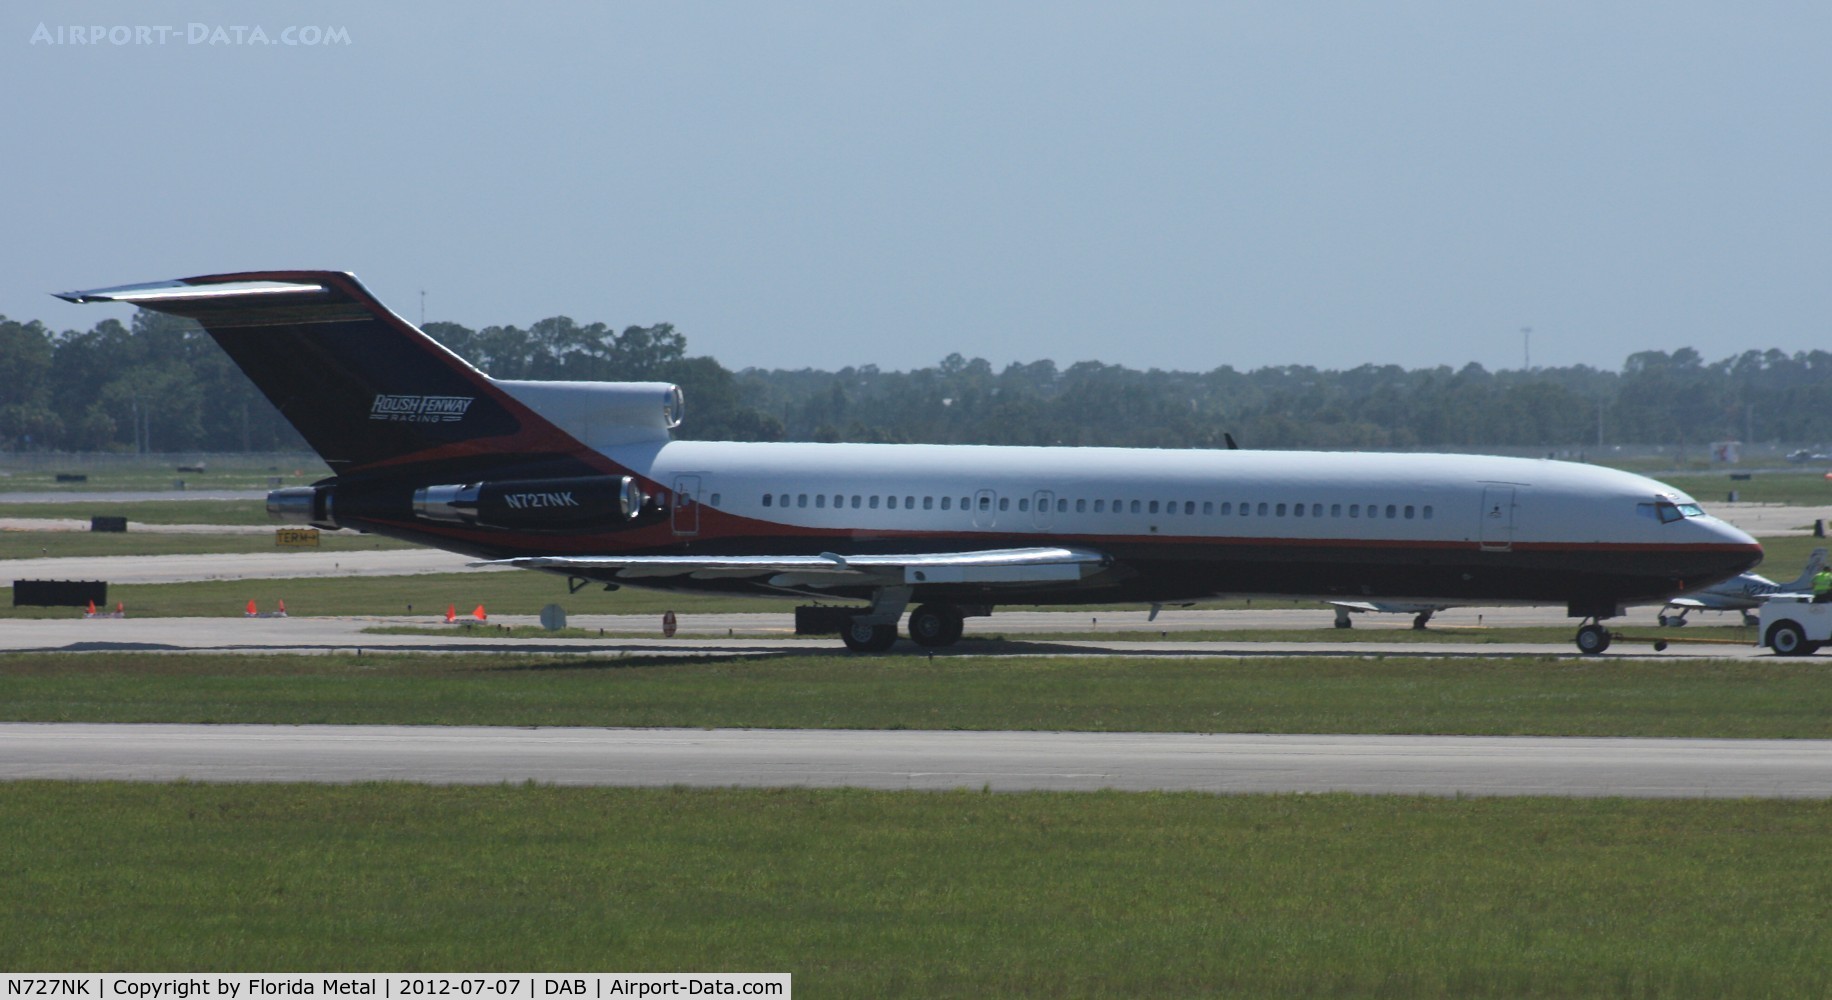 N727NK, 1979 Boeing 727-212 C/N 21945, Roush Fenway Racing 727